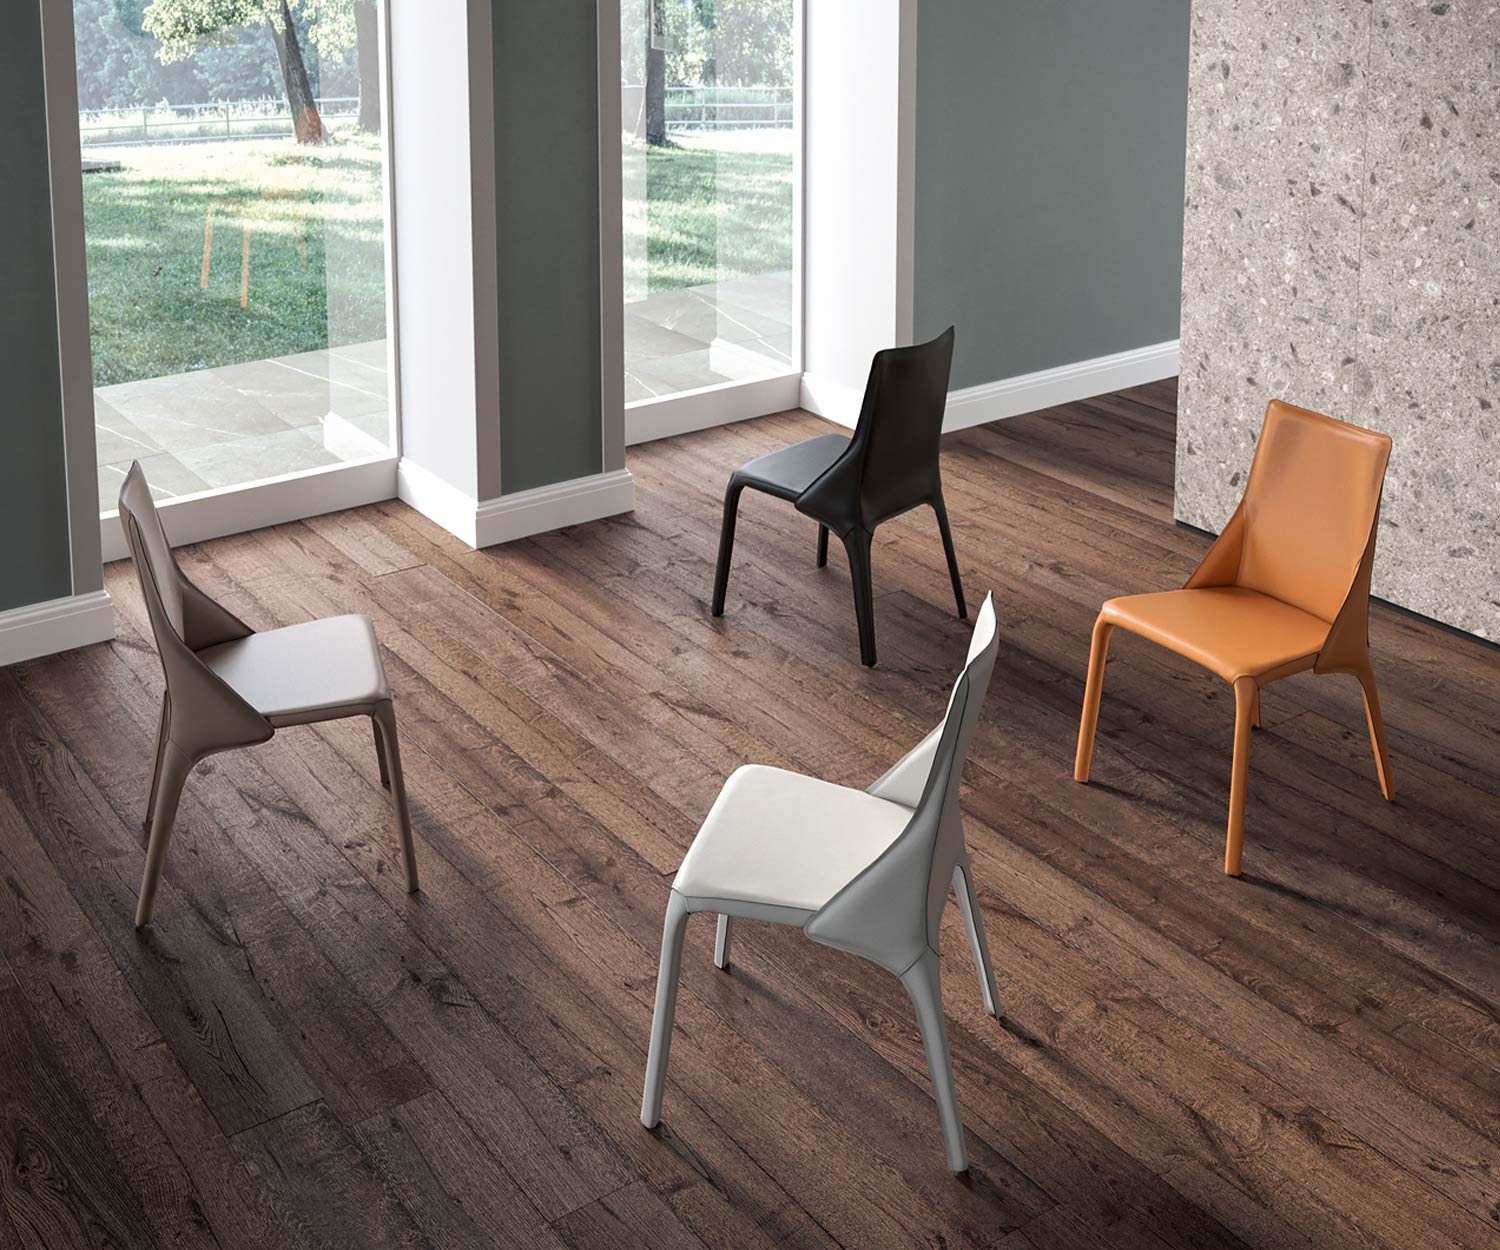 Moderner Design Lederstuhl vier Lederstühle in einem Zimmer auf Holzfußboden aufgestellt